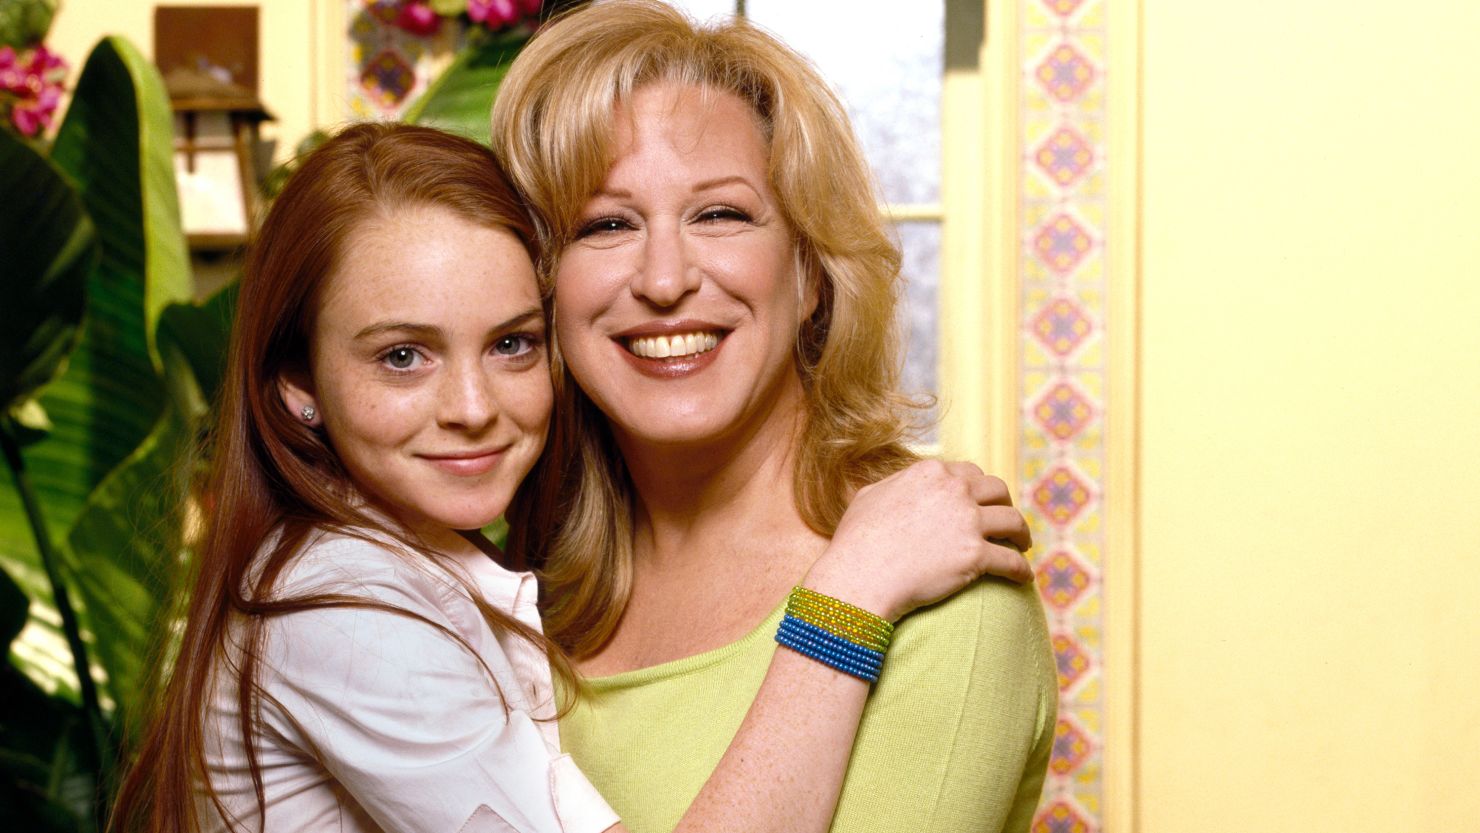  Lindsay Lohan (as Rose), Bette Midler (as Bette) on "Bette," April 1, 2000.